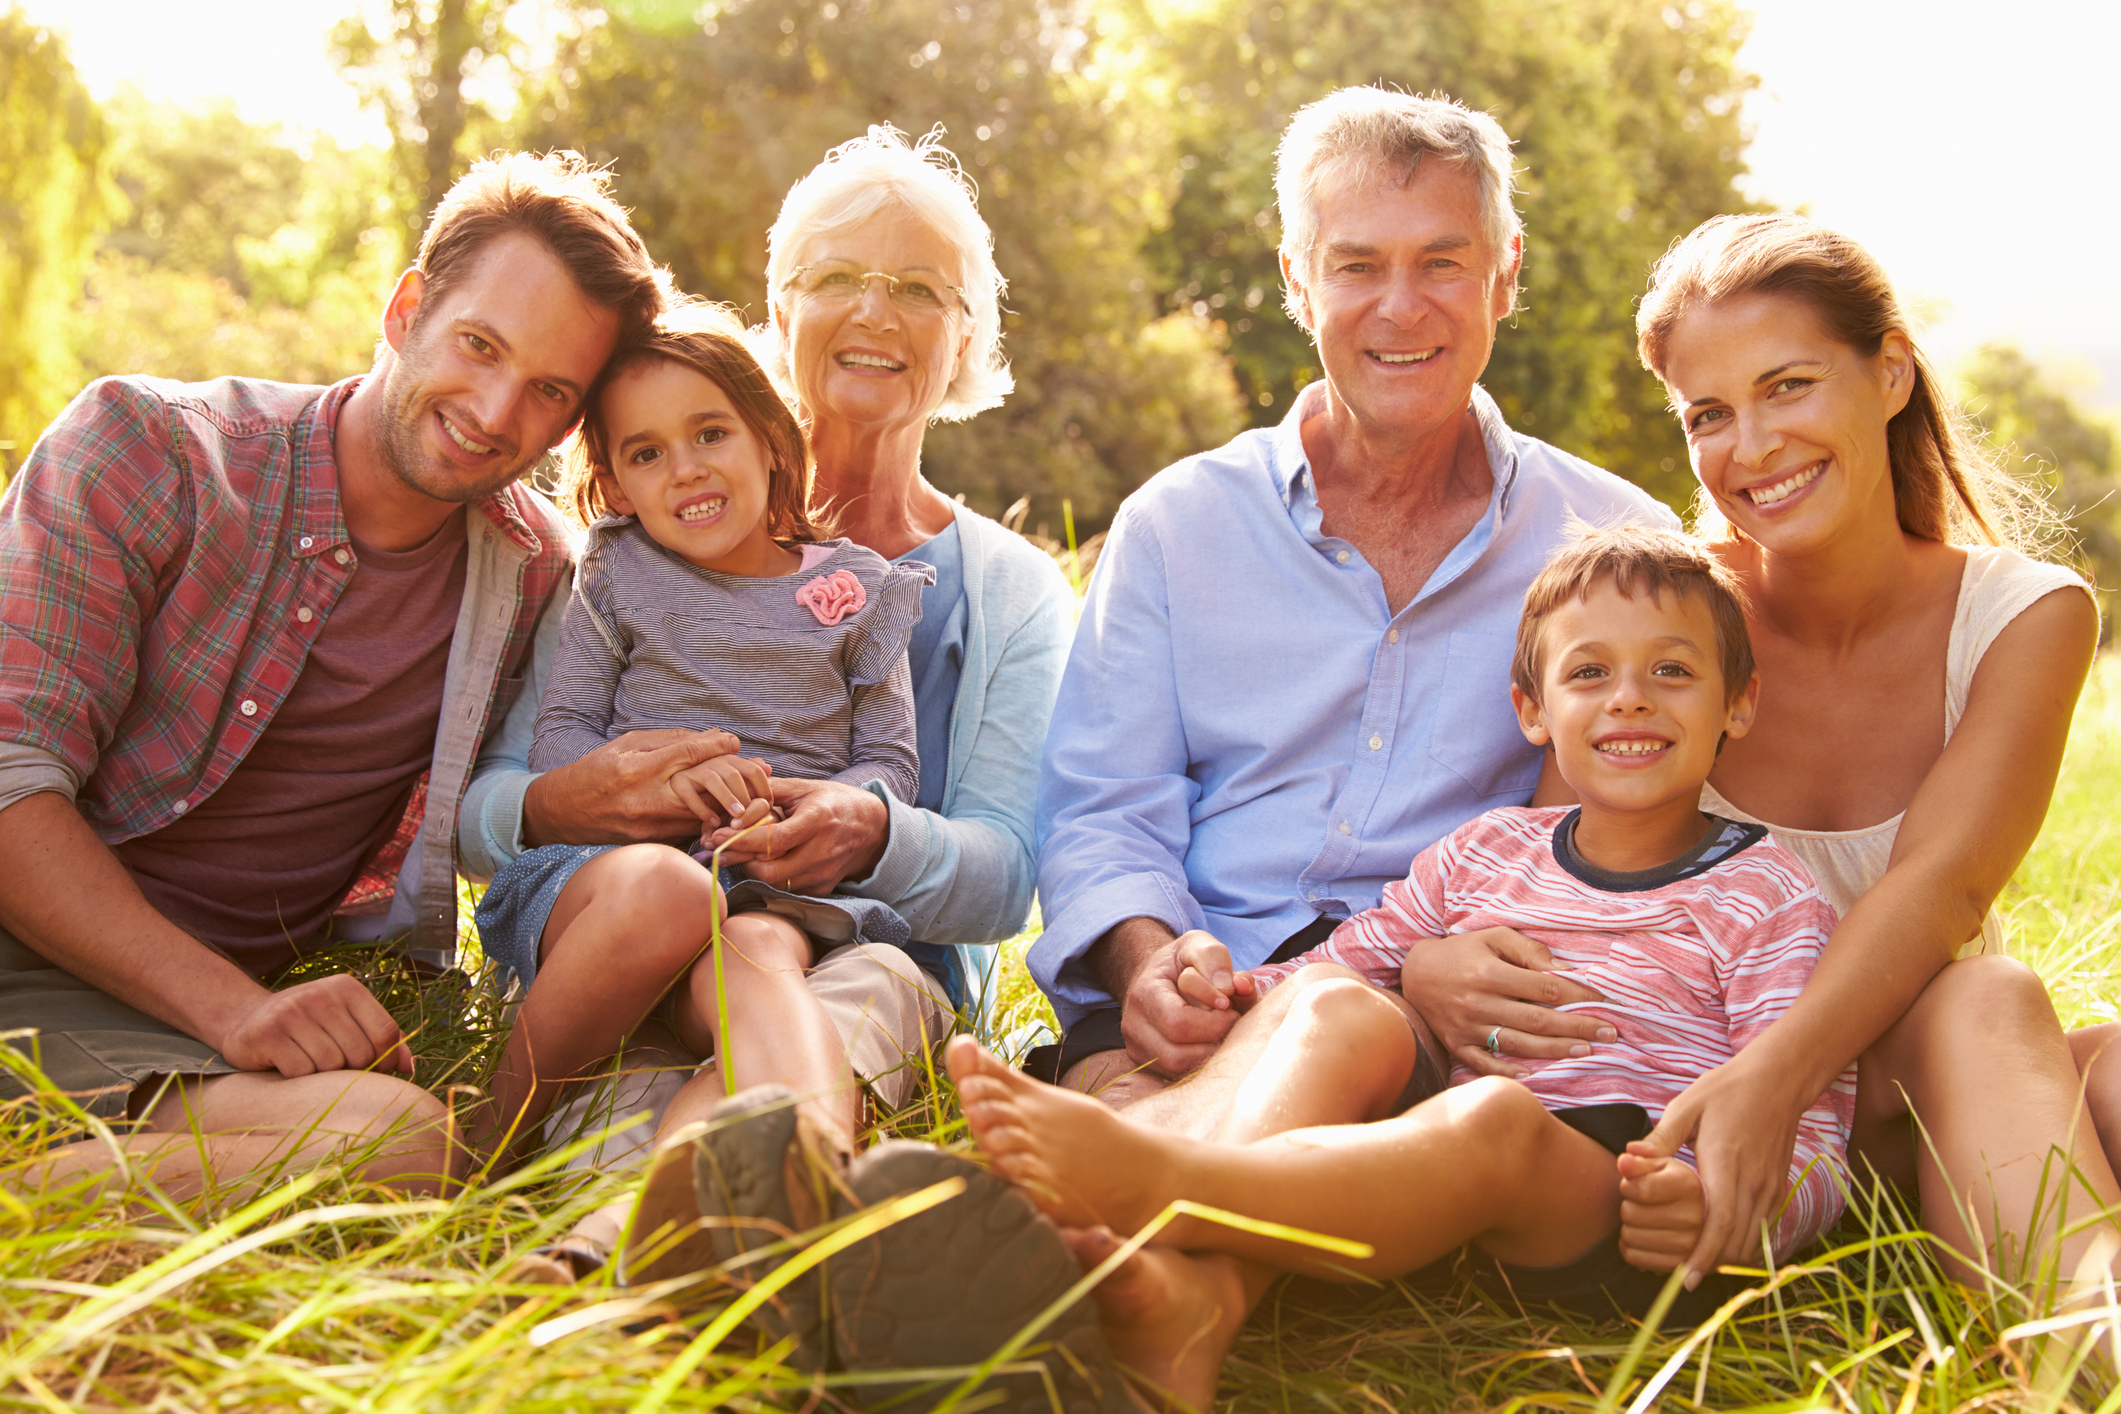 Seniors live longer with family. 